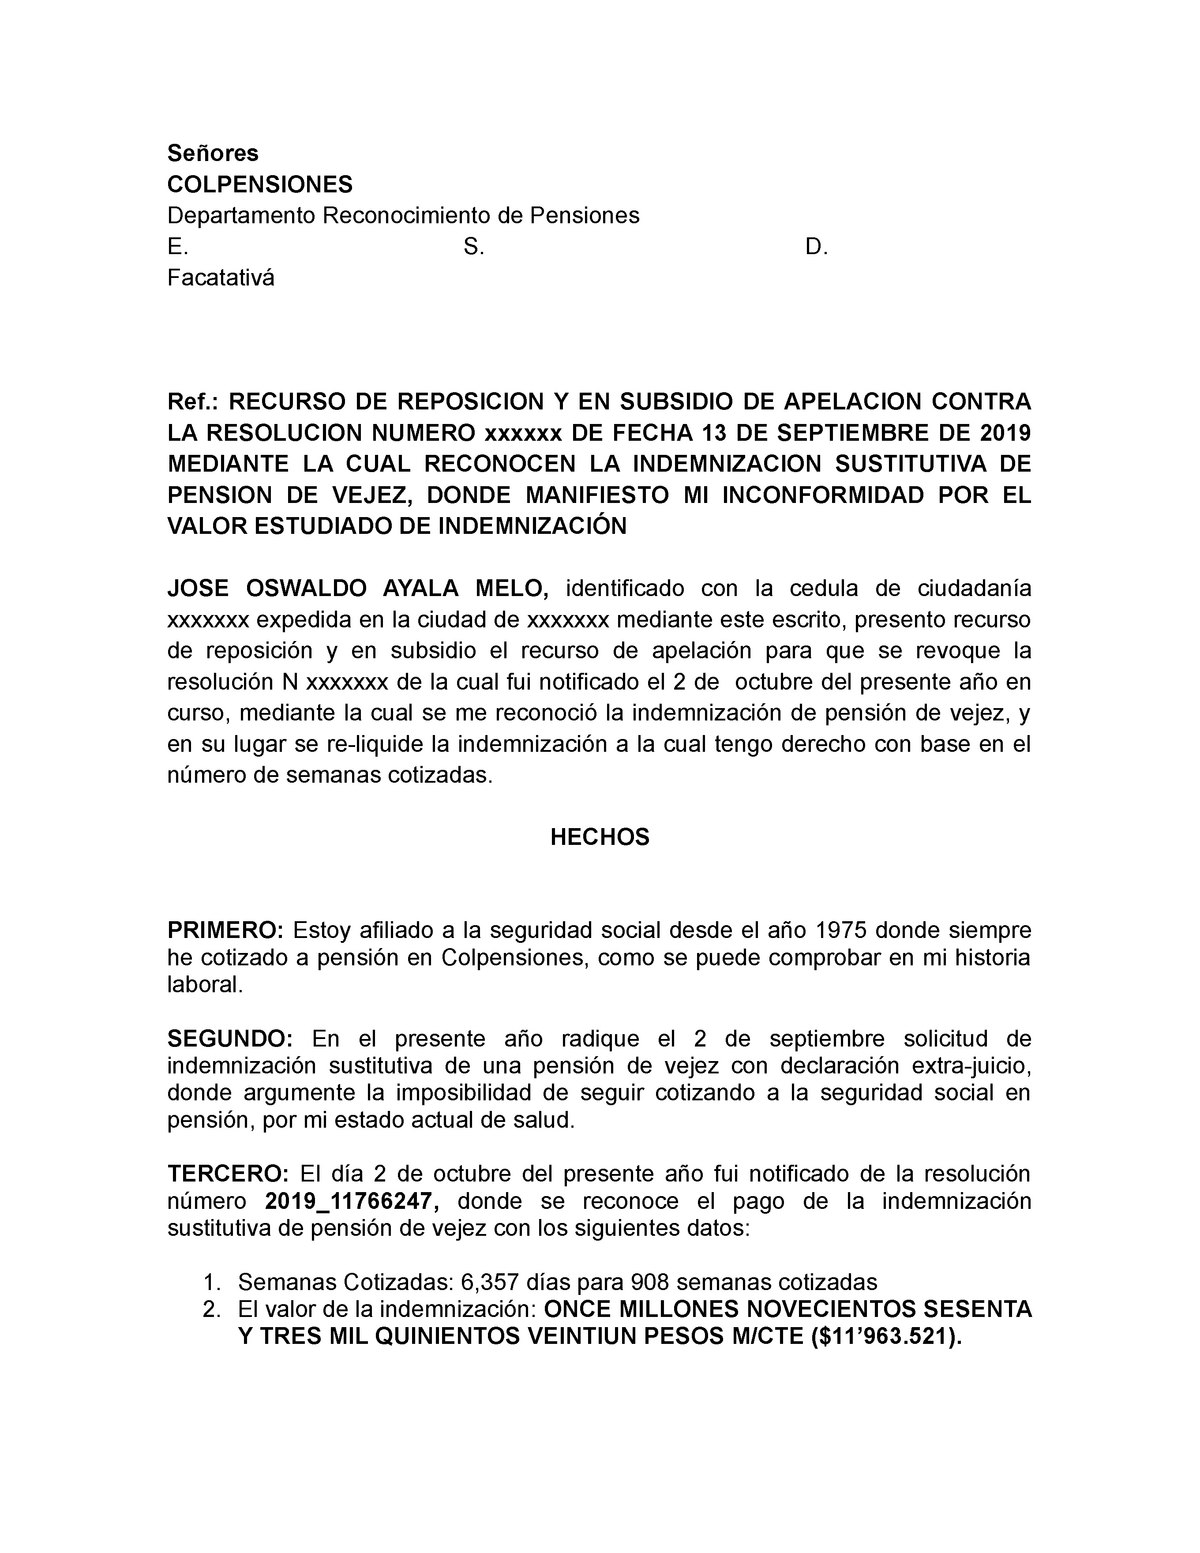 Recurso para colpensiones colombia - Señores COLPENSIONES Departamento  Reconocimiento de Pensiones - Studocu